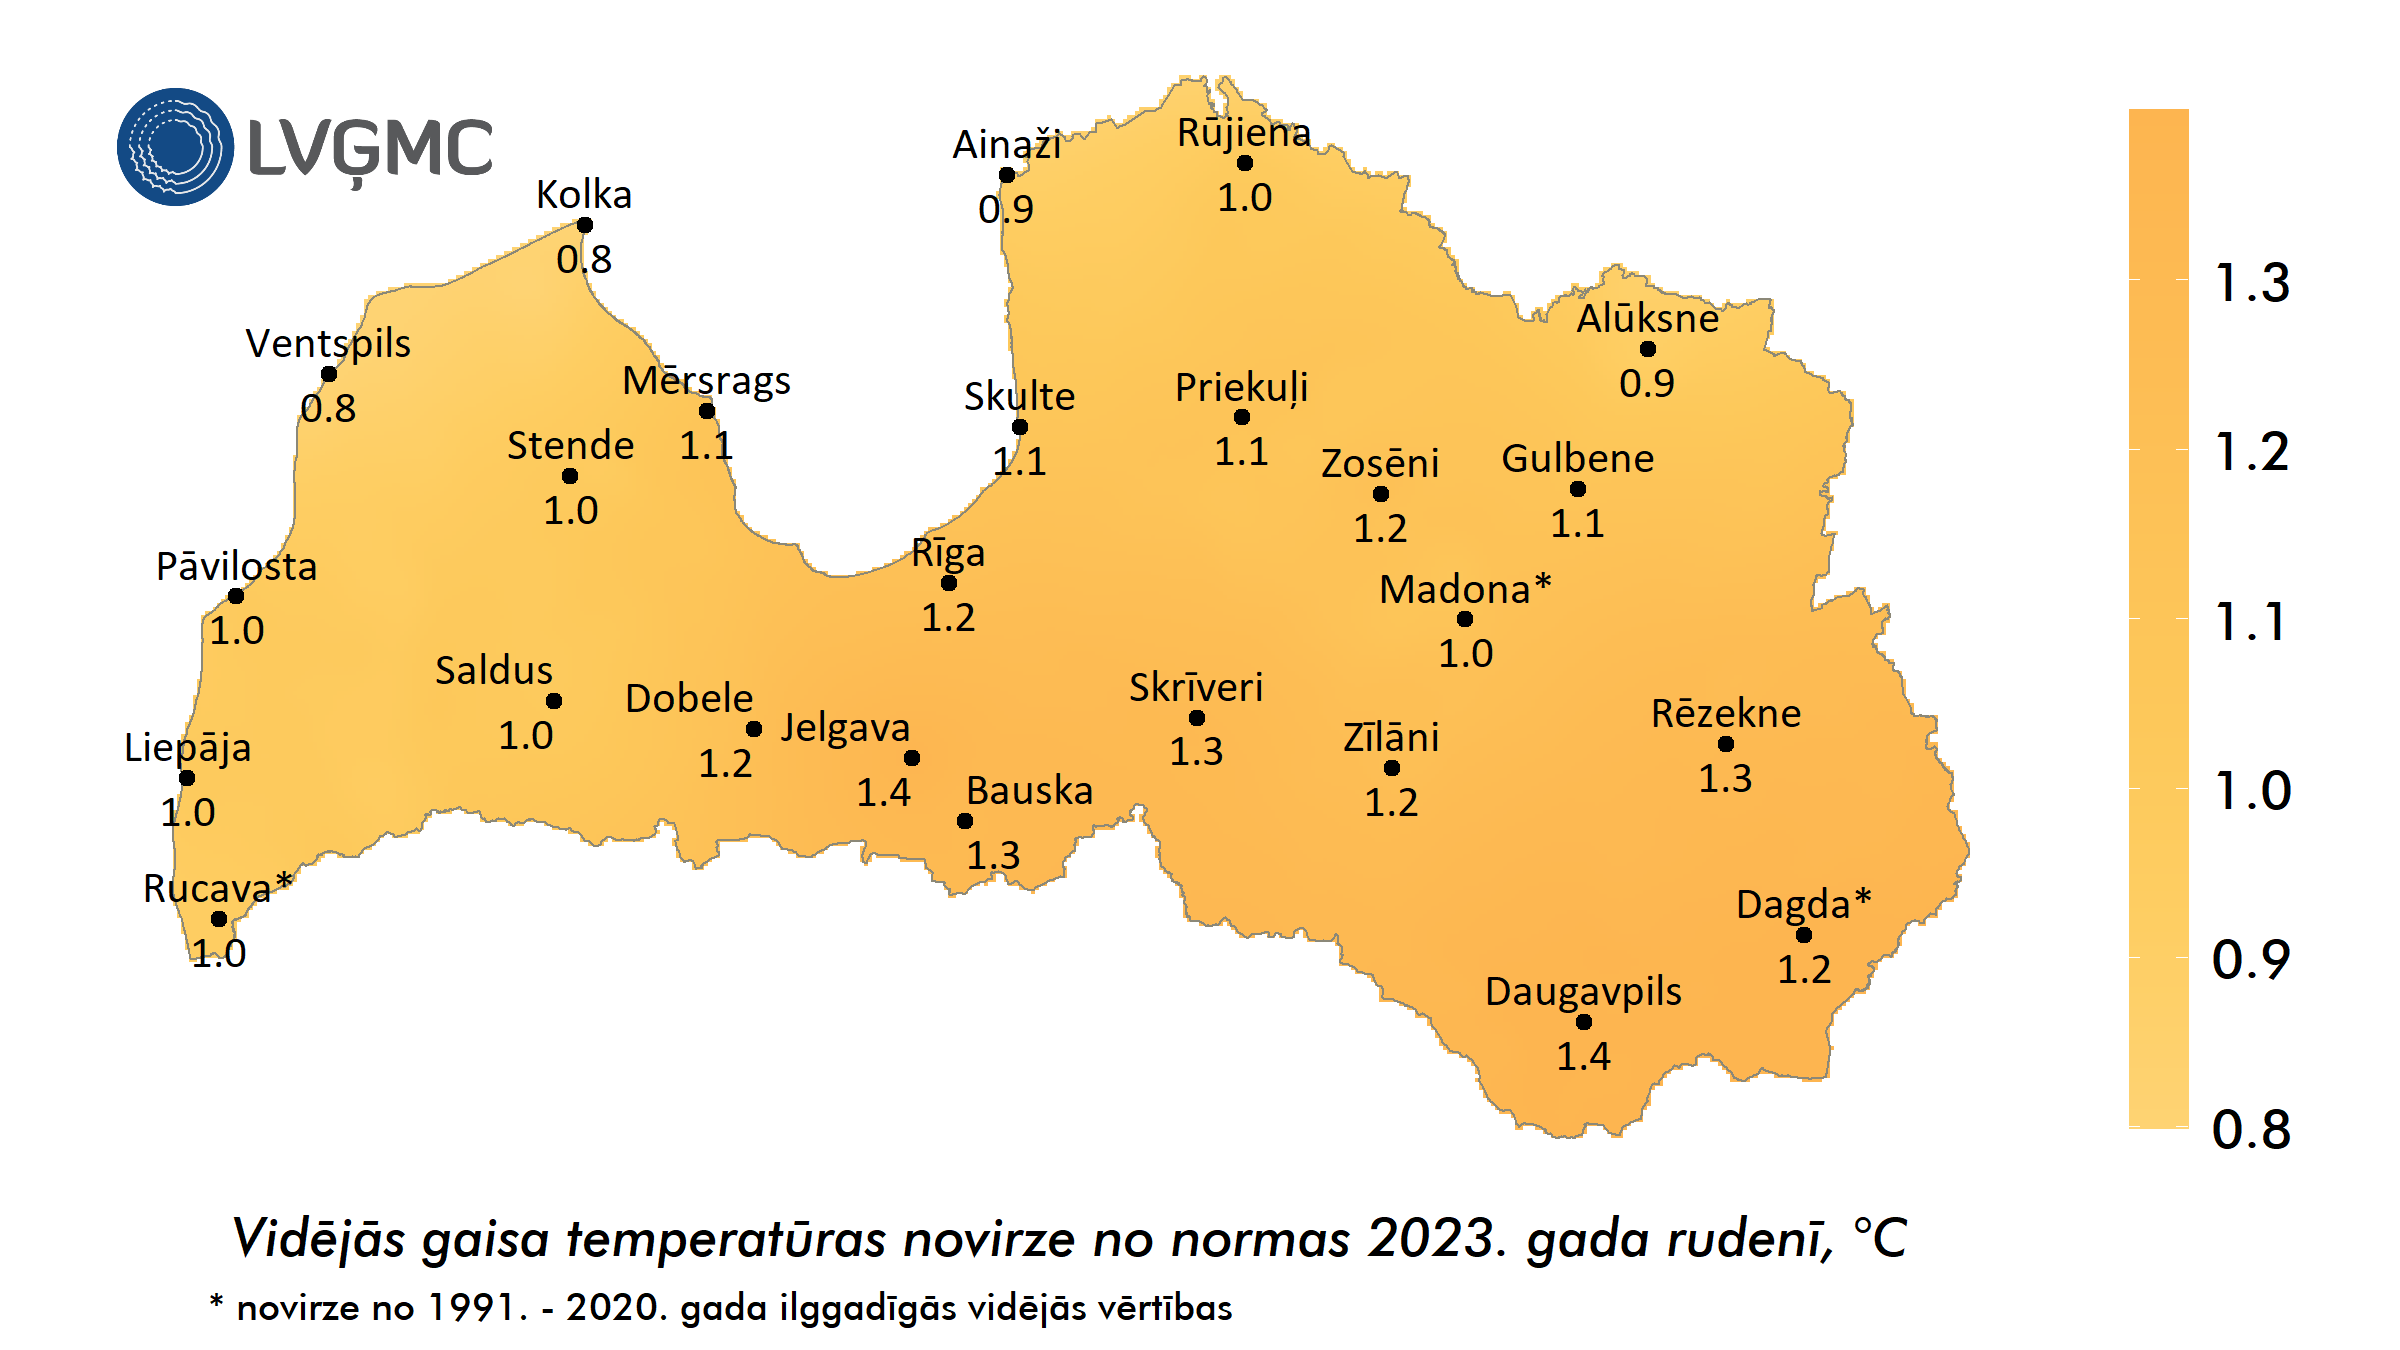 Vidējās gaisa temperatūras novirze no normas 2023. gada rudenī, °C